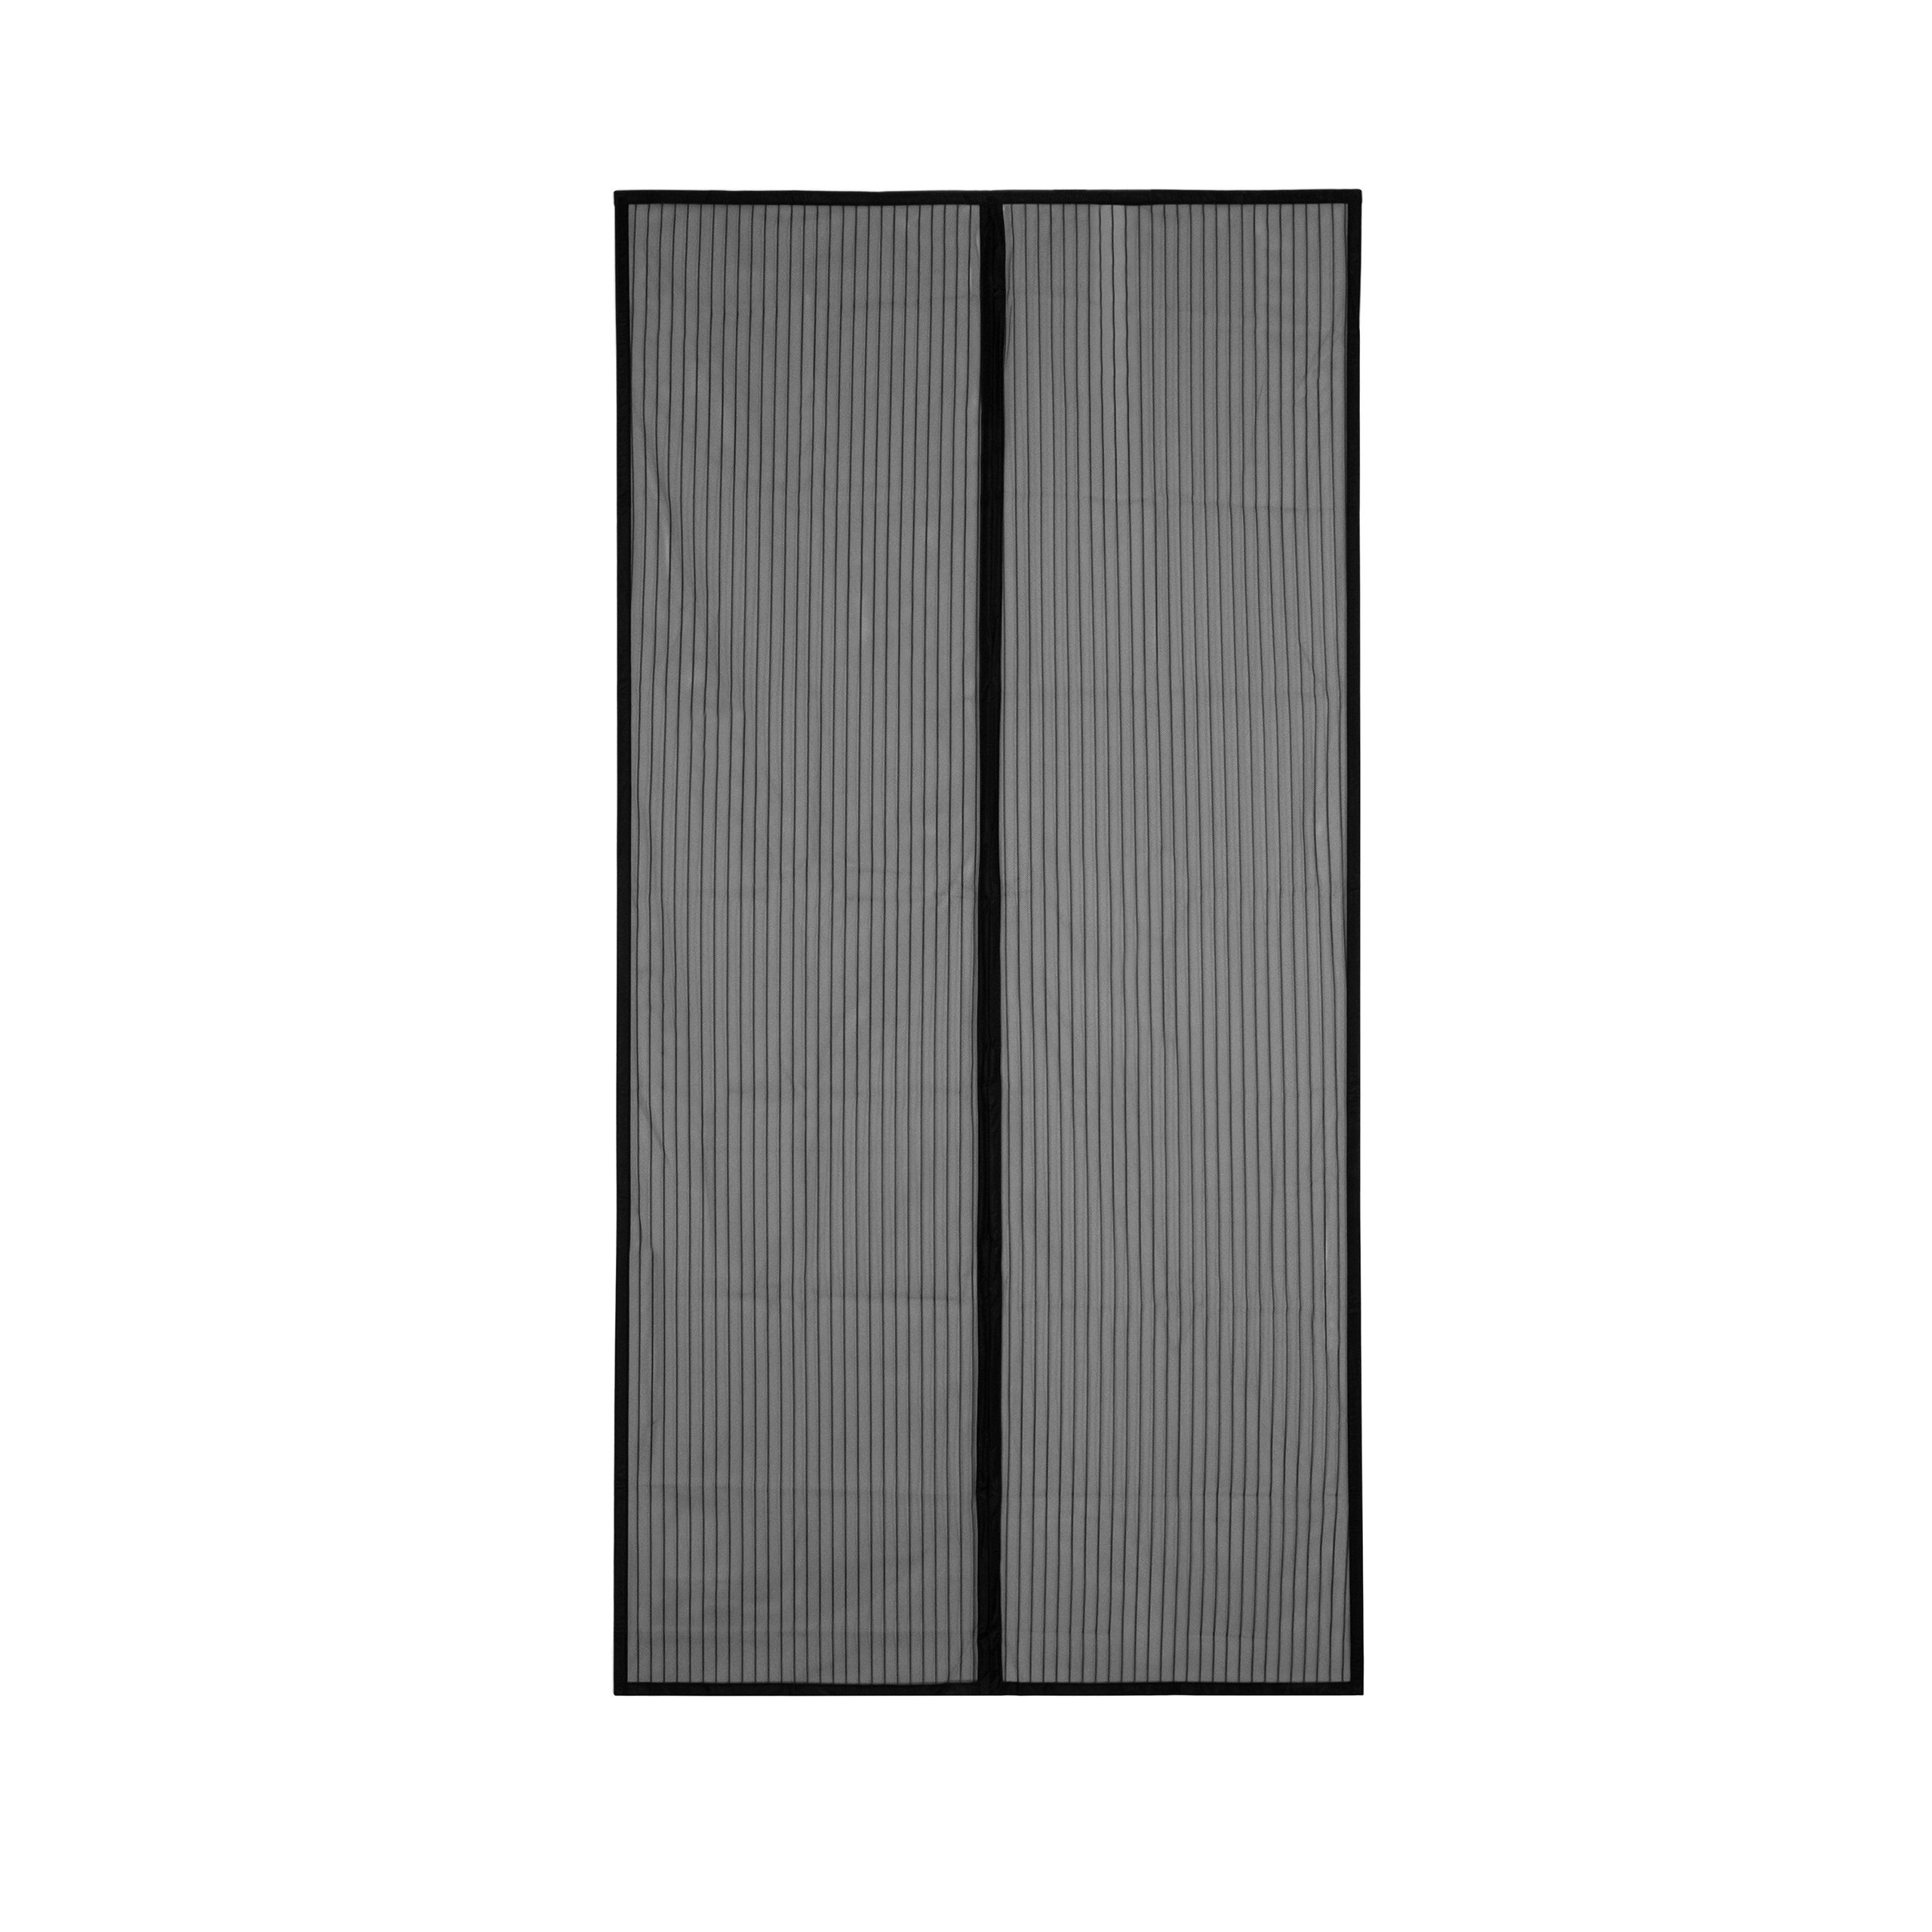 APANA Insektenschutz-Vorhang Fliegengitter Magnetvorhang Magnetisch Vorhang Türvorhang Balkontür, Farbe:weiß,Größe (Breite x Höhe):120 x 240 cm